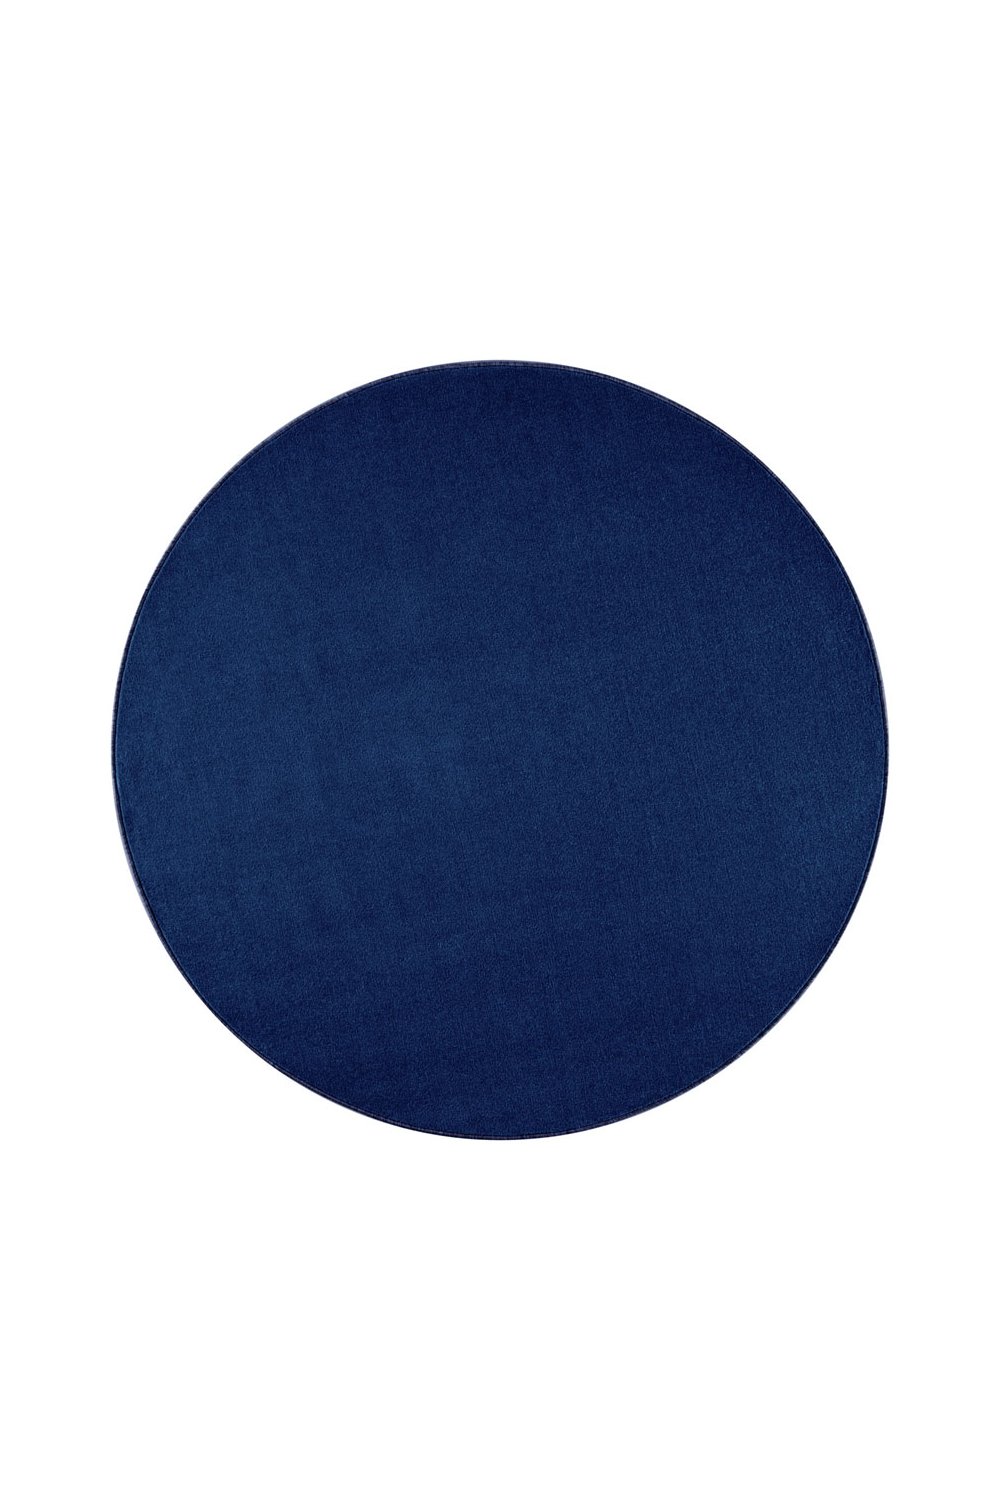 Dywan Granatowy Jednokolorowy Nasty Okrągły 104447 Dark Blue